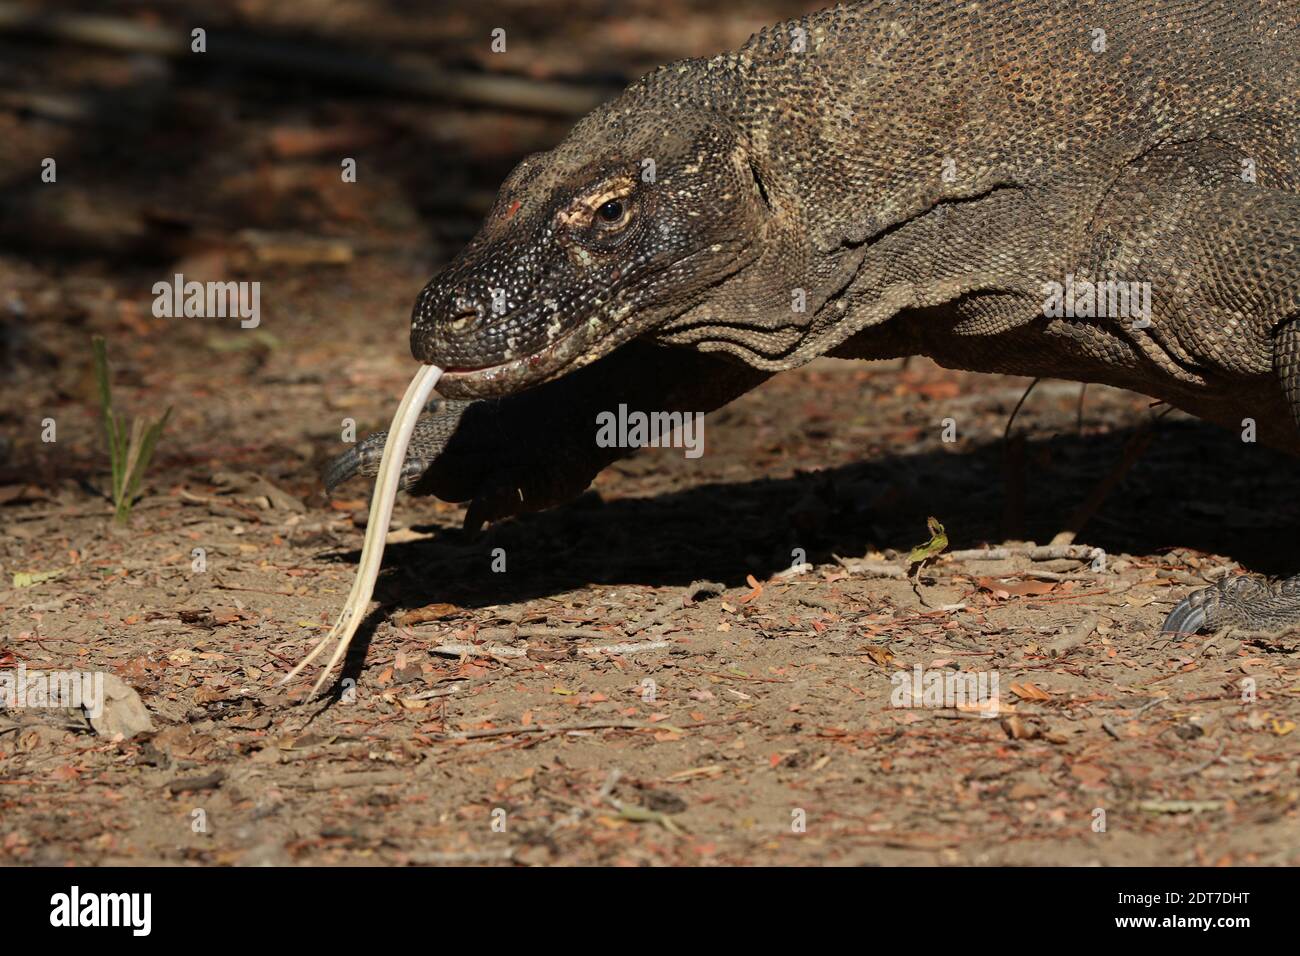 Komodo dragon, Komodo monitor, ora (Varanus komodoensis), sticking tongue out, portrait, Indonesia, Komodo island Stock Photo